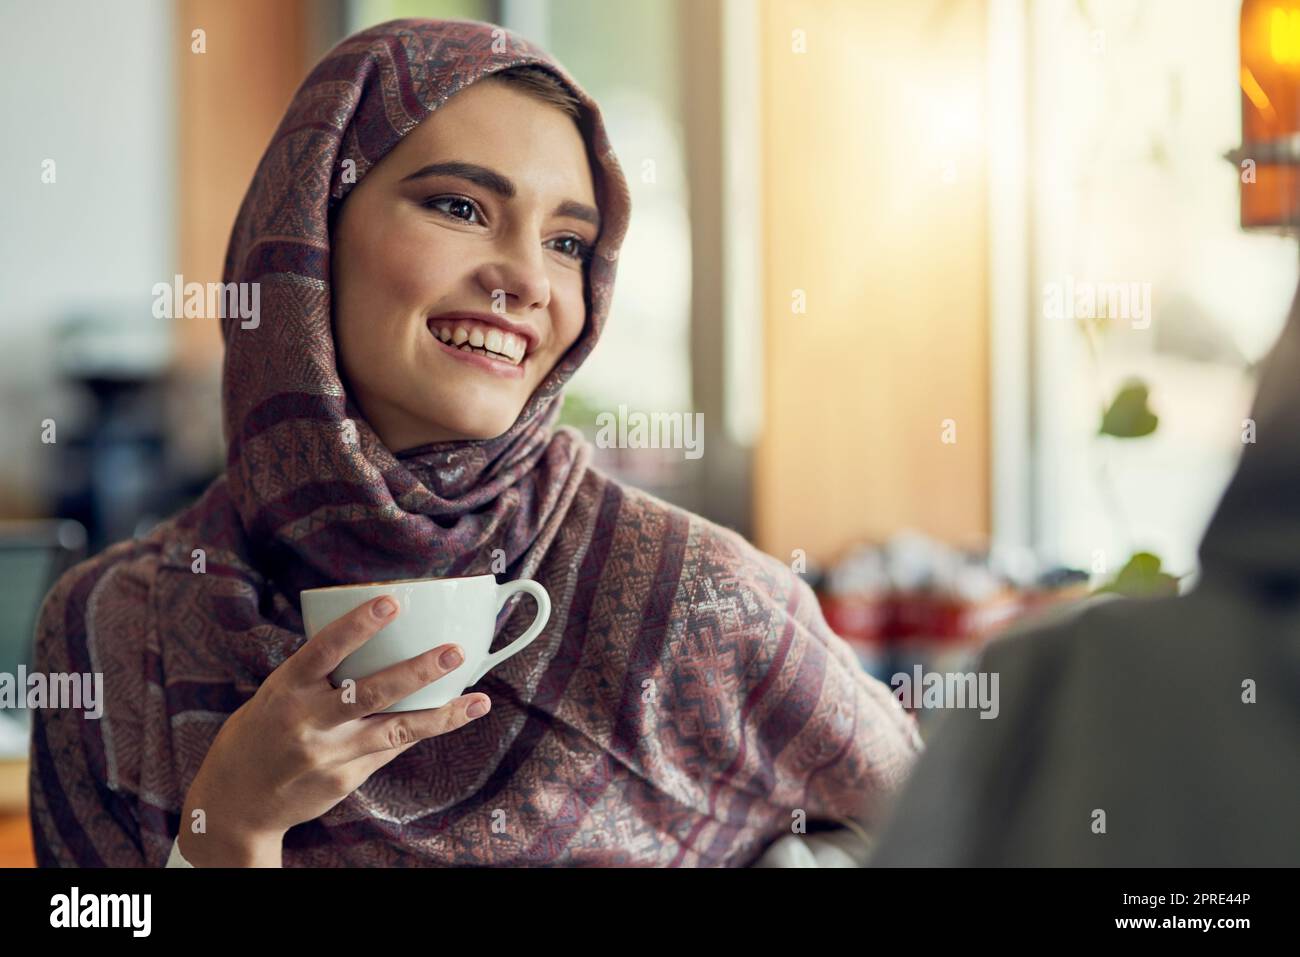 I migliori amici fanno i compagni perfetti del caffè. Una giovane donna che ha un caffè con la sua amica in un caffè. Foto Stock